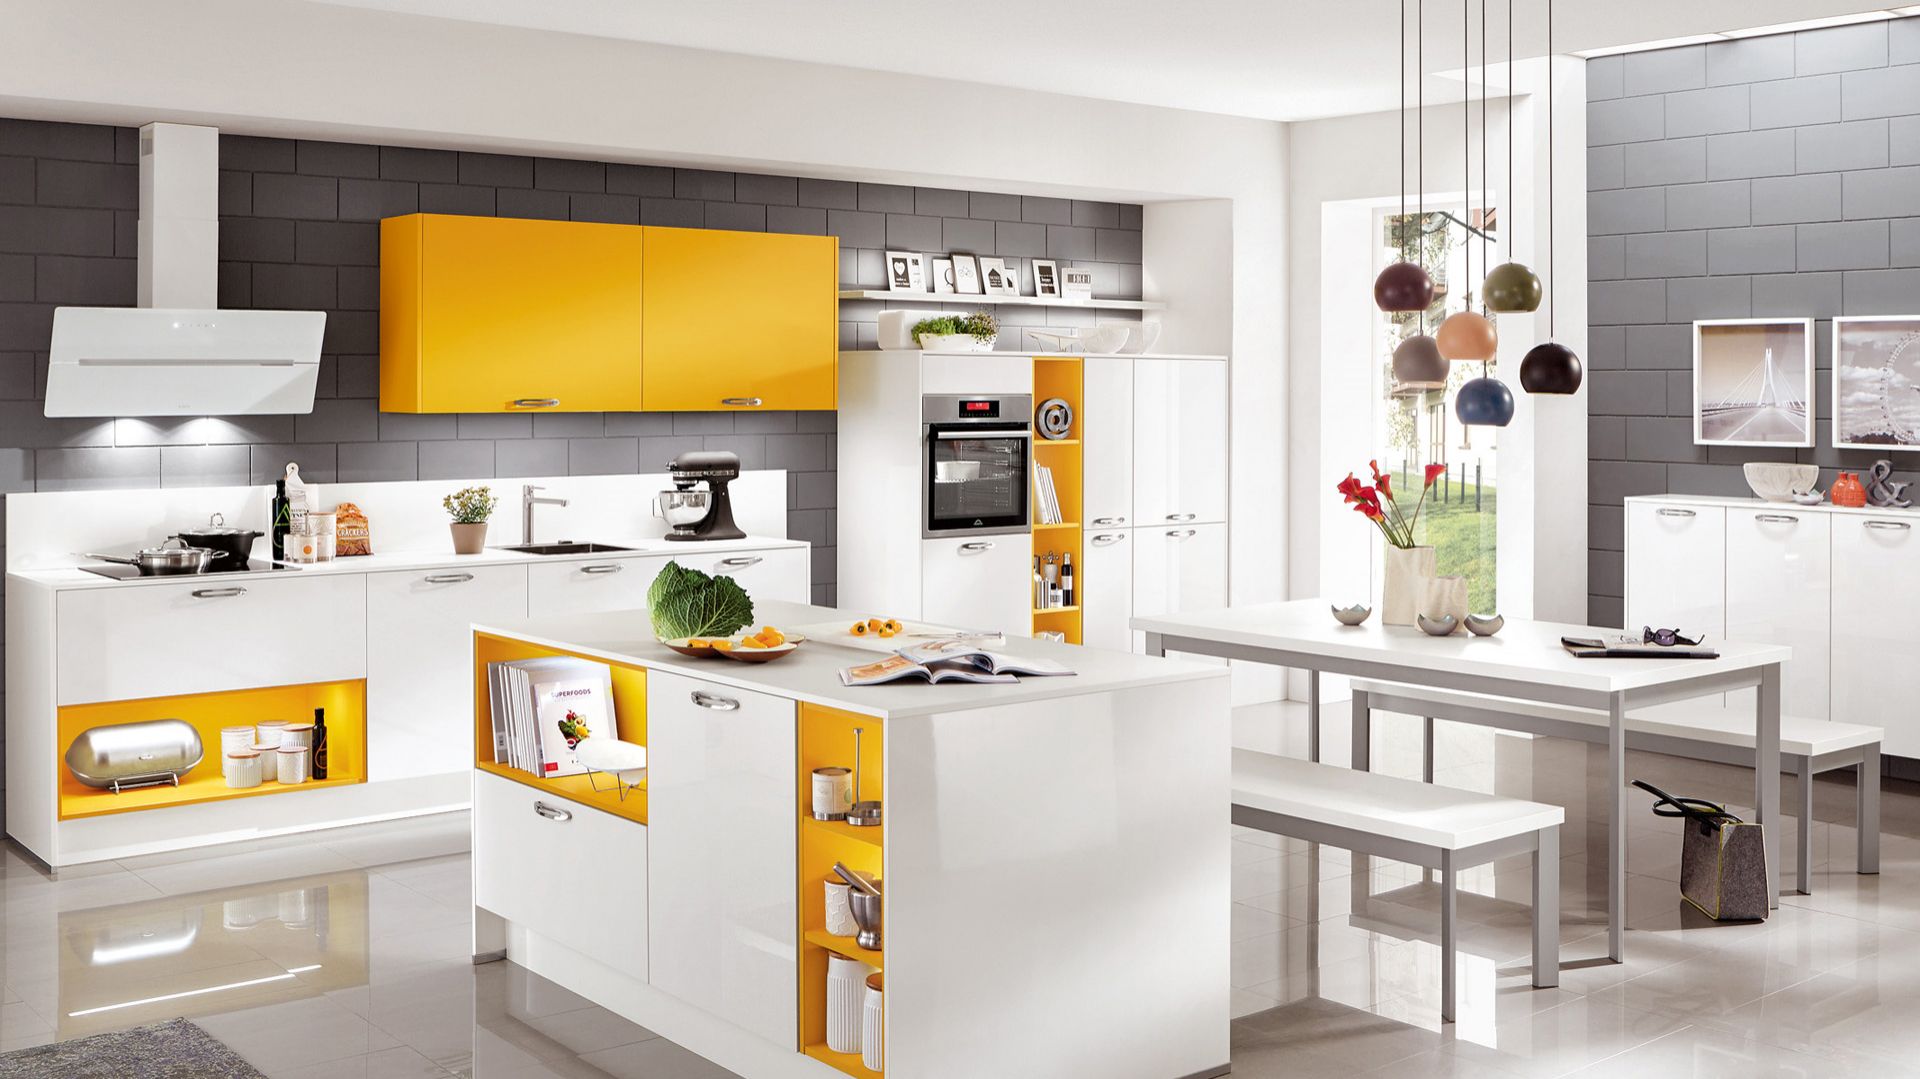 Meble w kuchni - jak ożywić minimalistyczne wnętrze kolorem